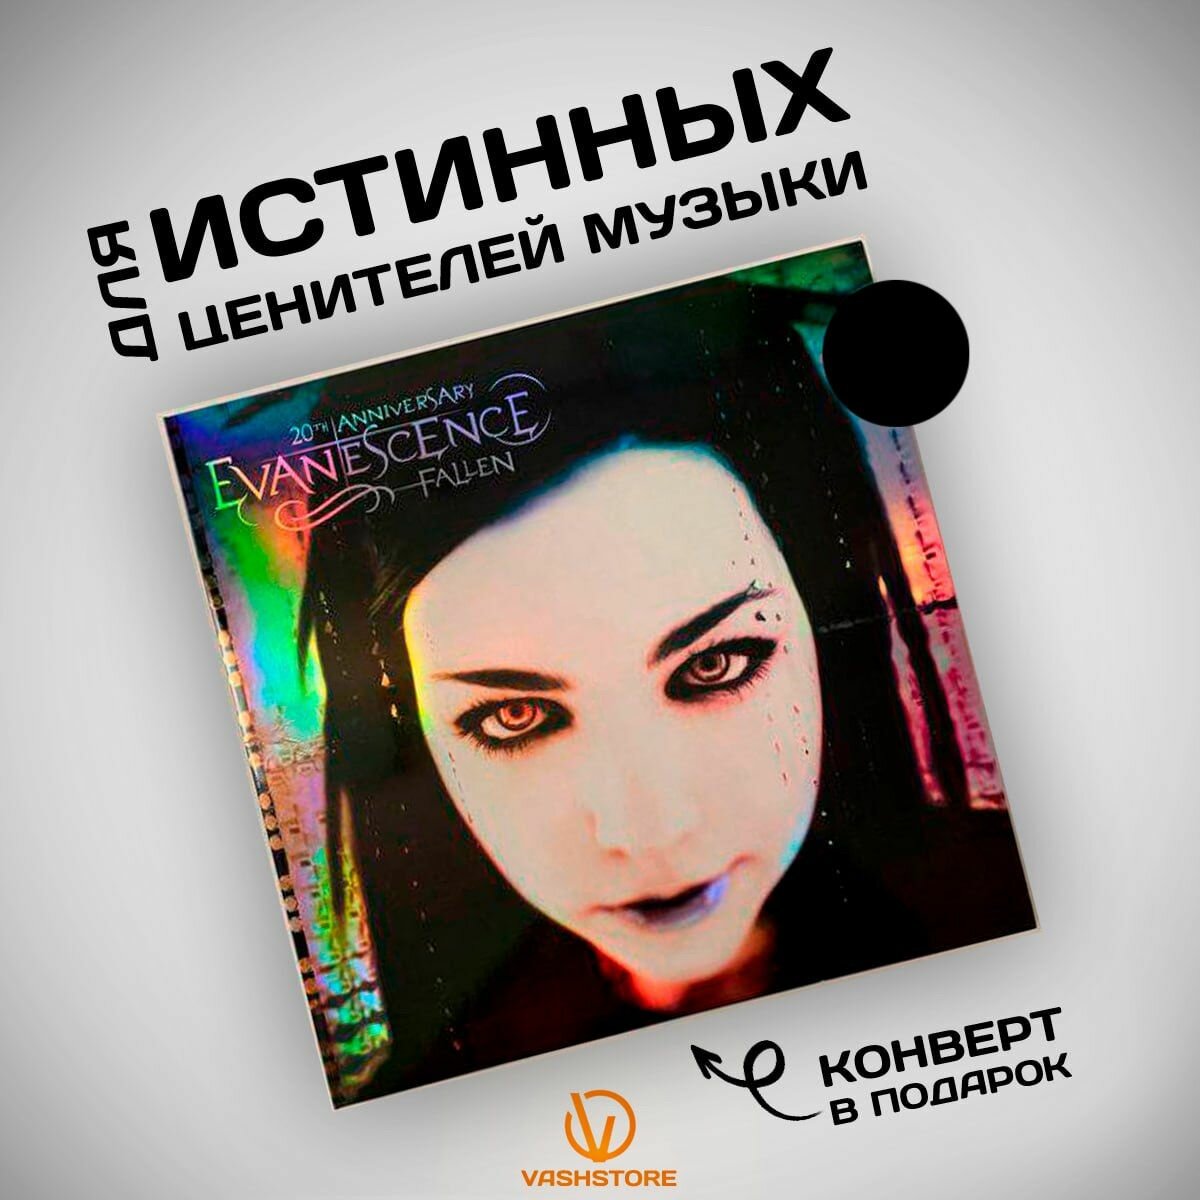 Виниловая пластинка Evanescence - Fallen deluxe (2LP) чёрный винил